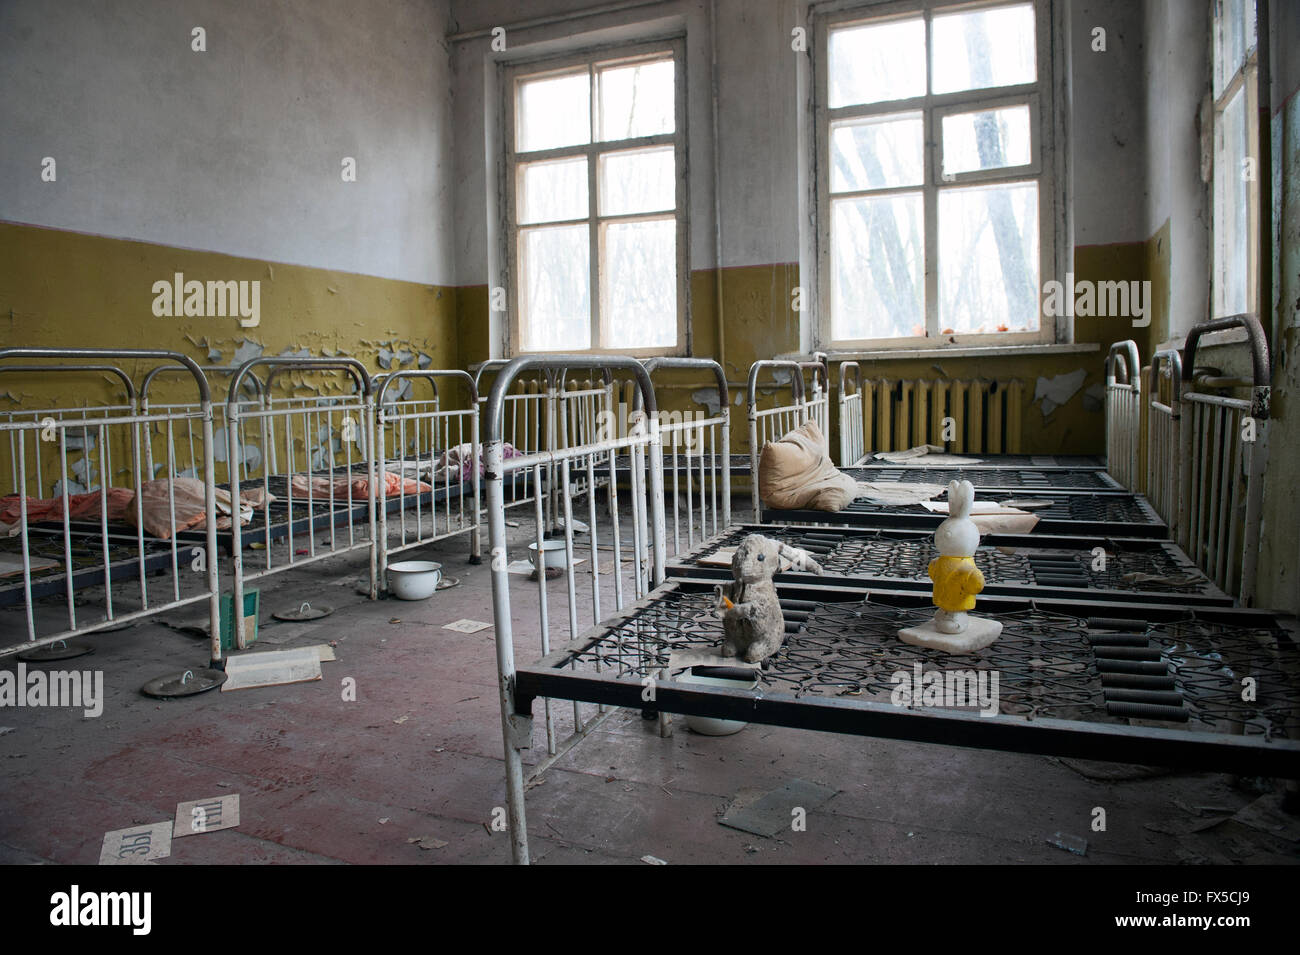 Asilo nido/vivaio abbandonato la città di pripjat, Ucraina. Pripjat fu abbandonata in seguito al disastro nucleare di Chernobyl. Foto Stock